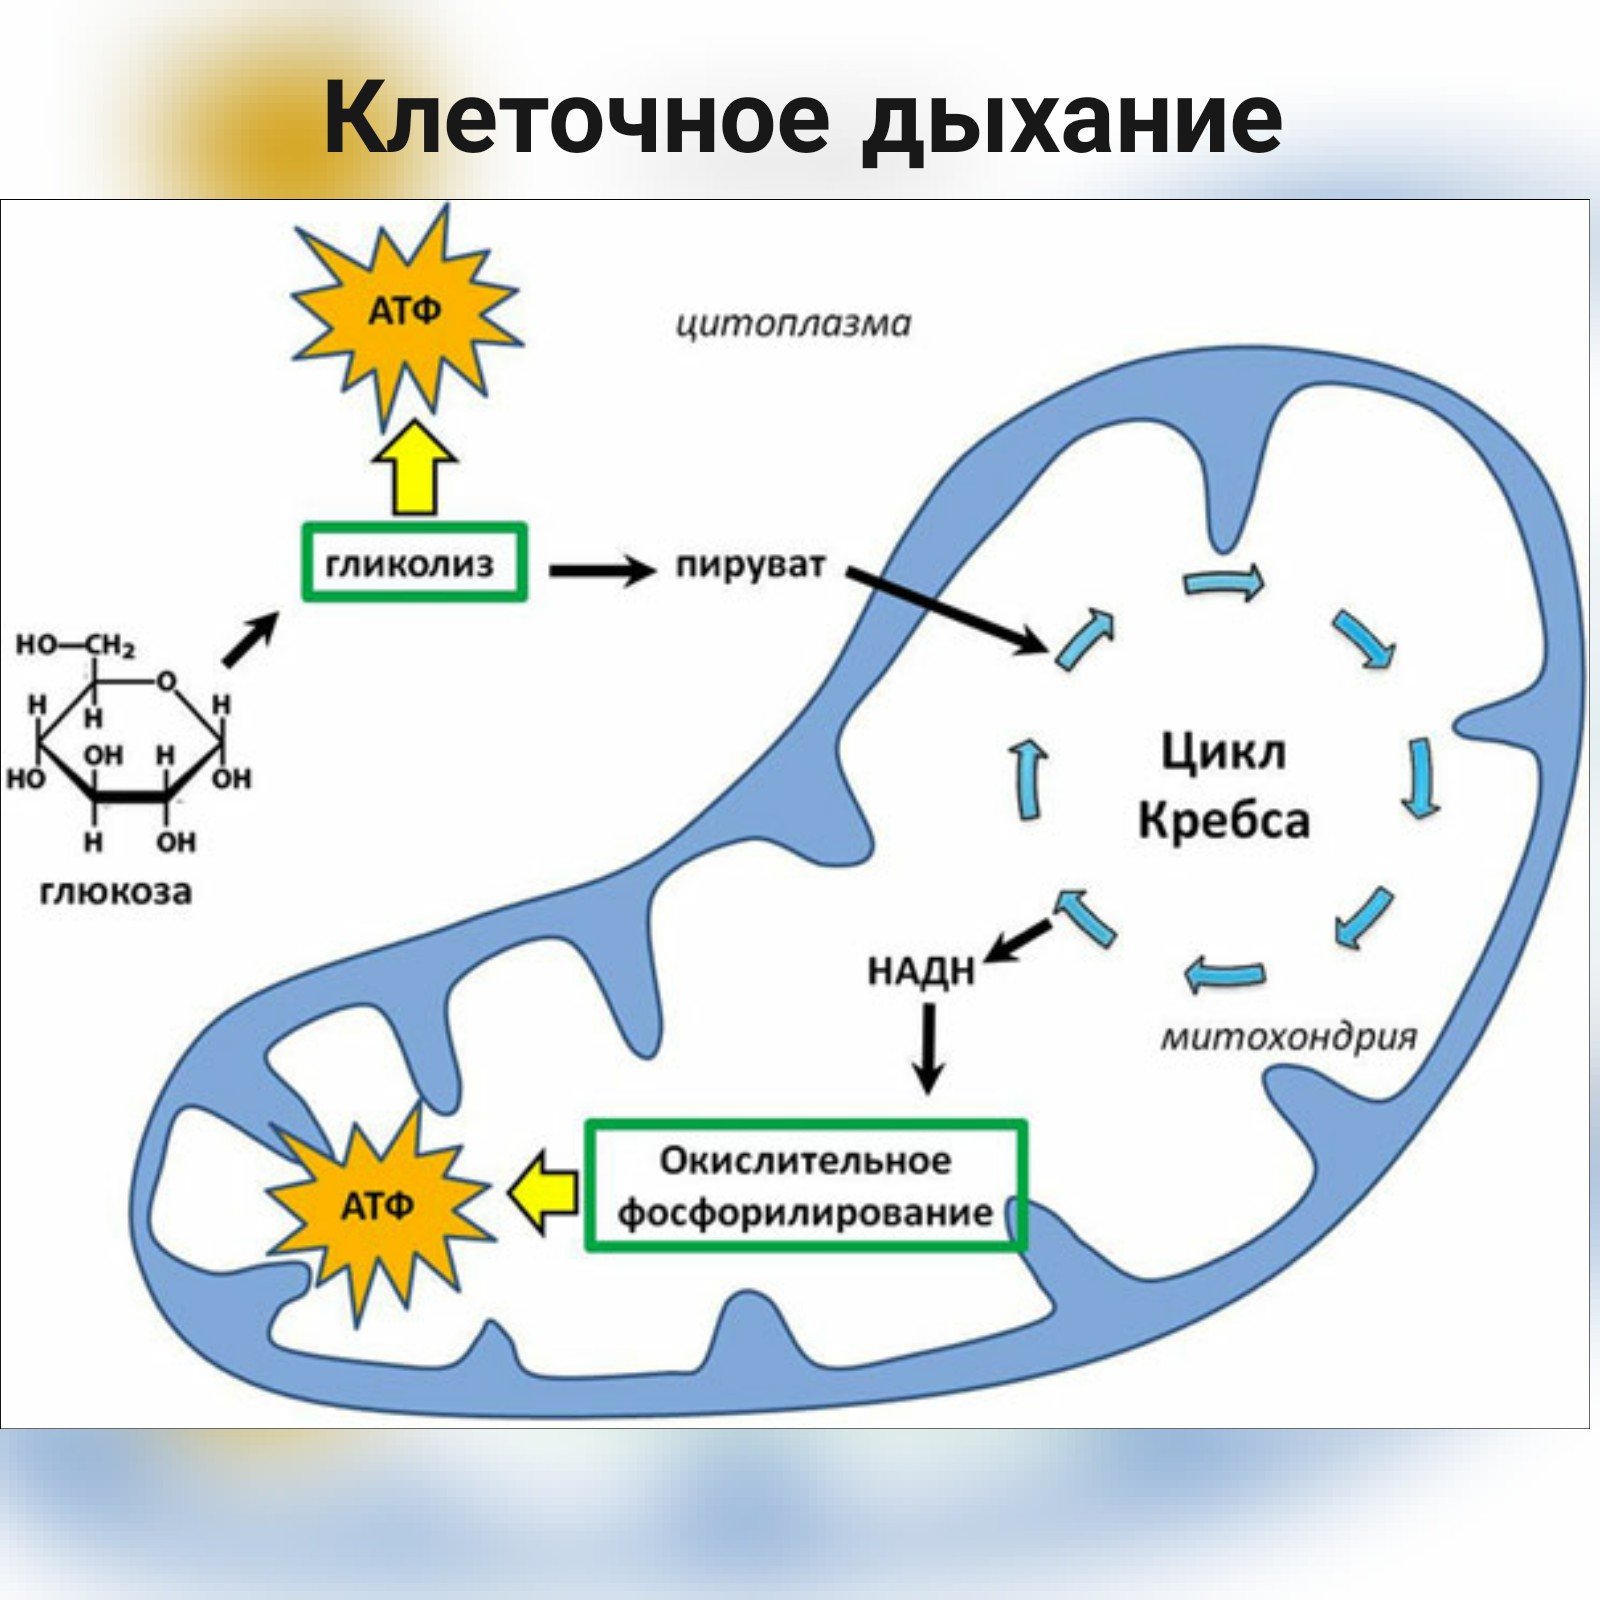 Митохондрии синтезируют атф. Схема клеточного дыхания цикл Кребса. Синтез Глюкозы в митохондриях. Энергетический обмен в митохондриях схема.